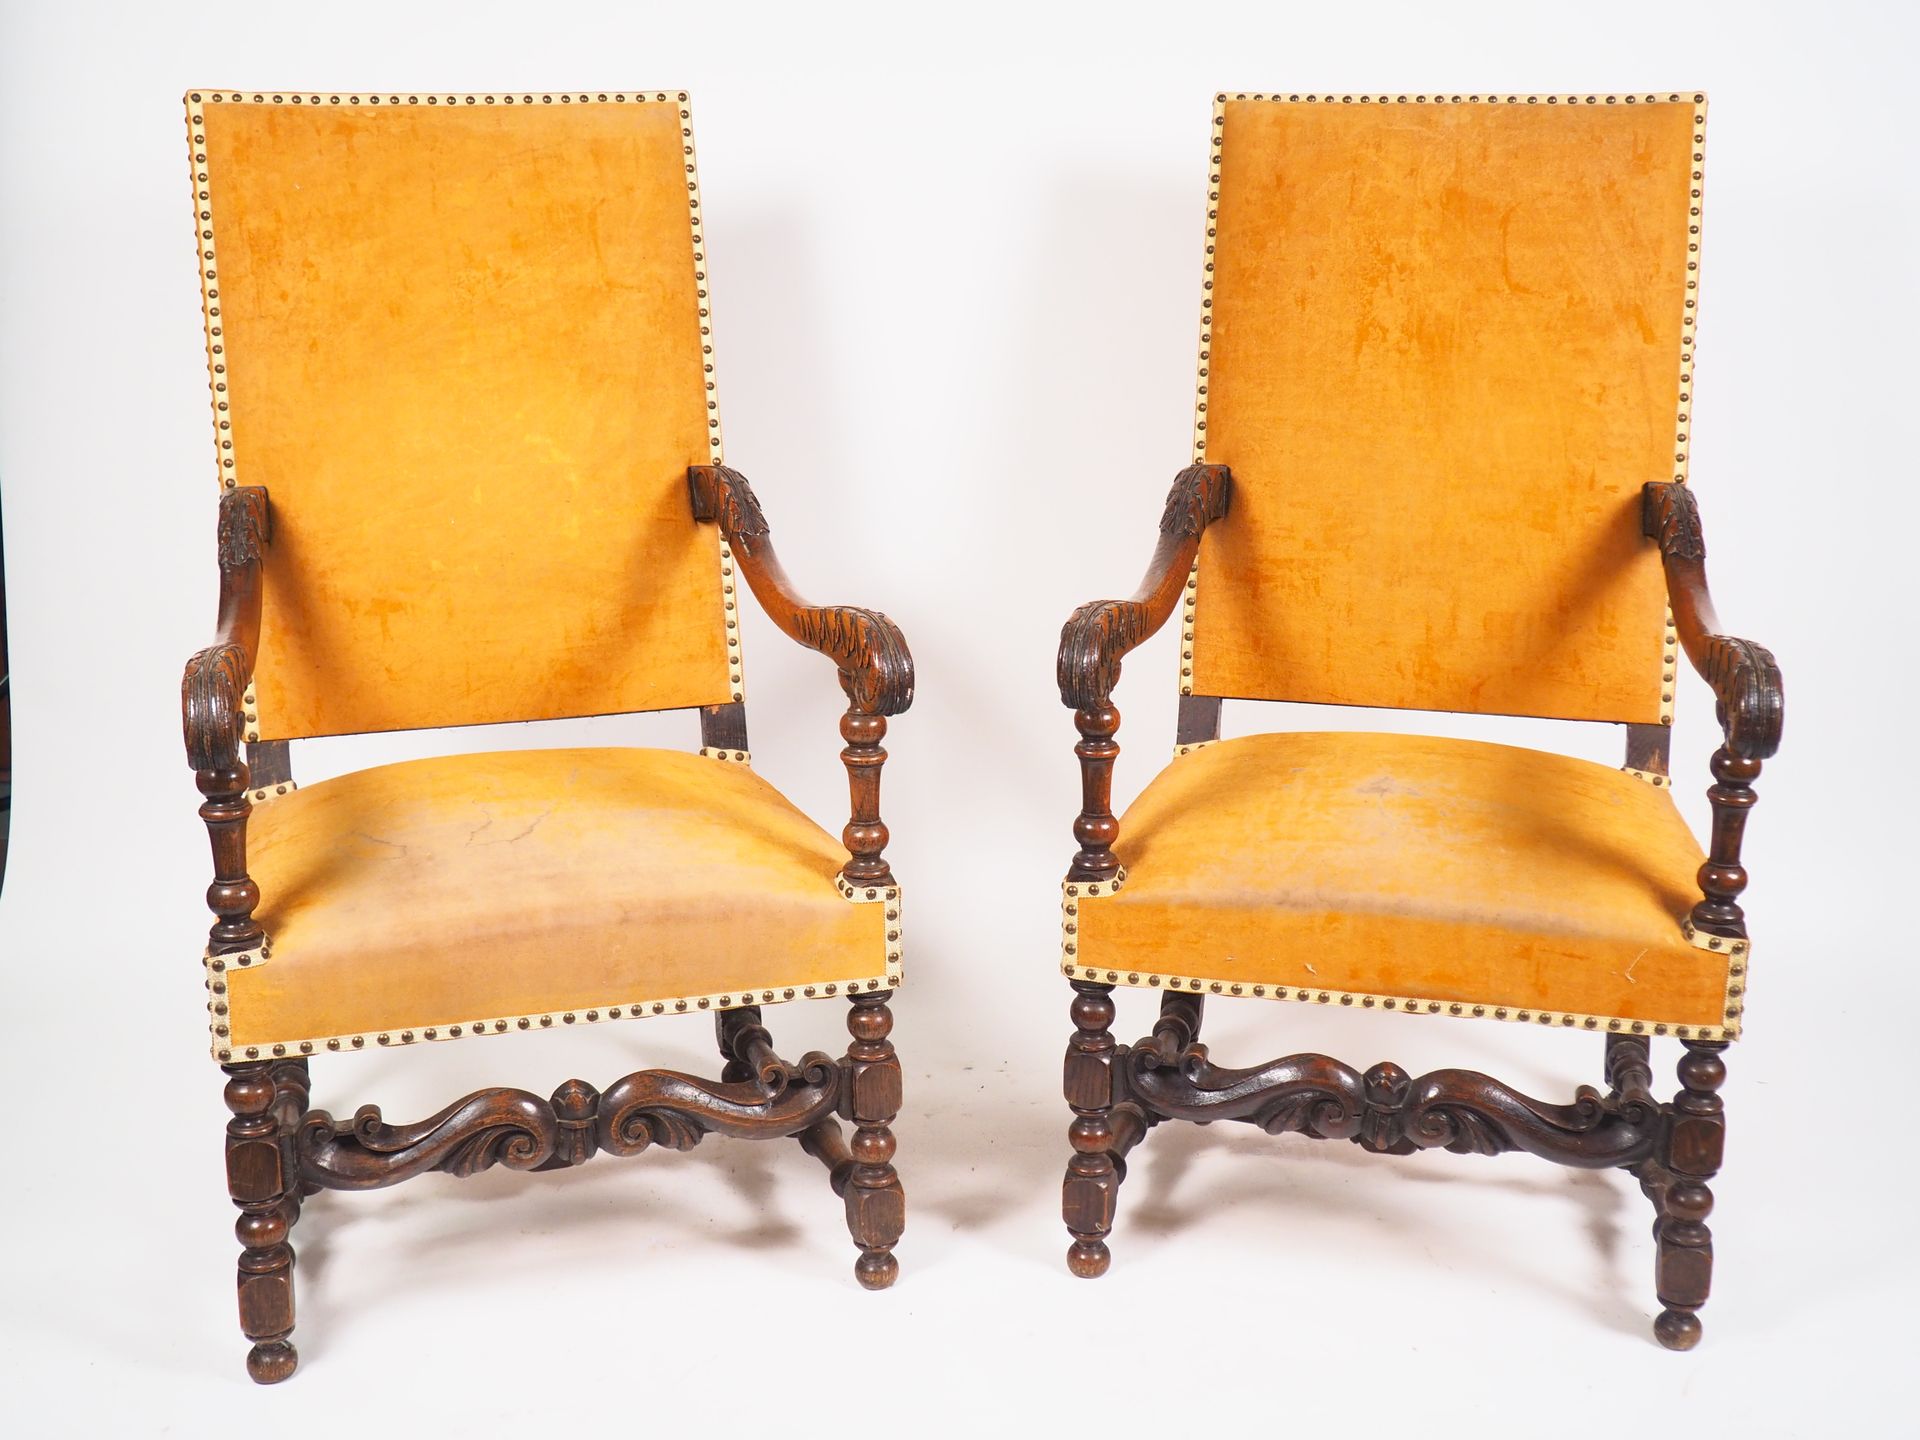 Null 一对路易十三时期的扶手椅，模制和雕刻的木头，橙色天鹅绒装饰。